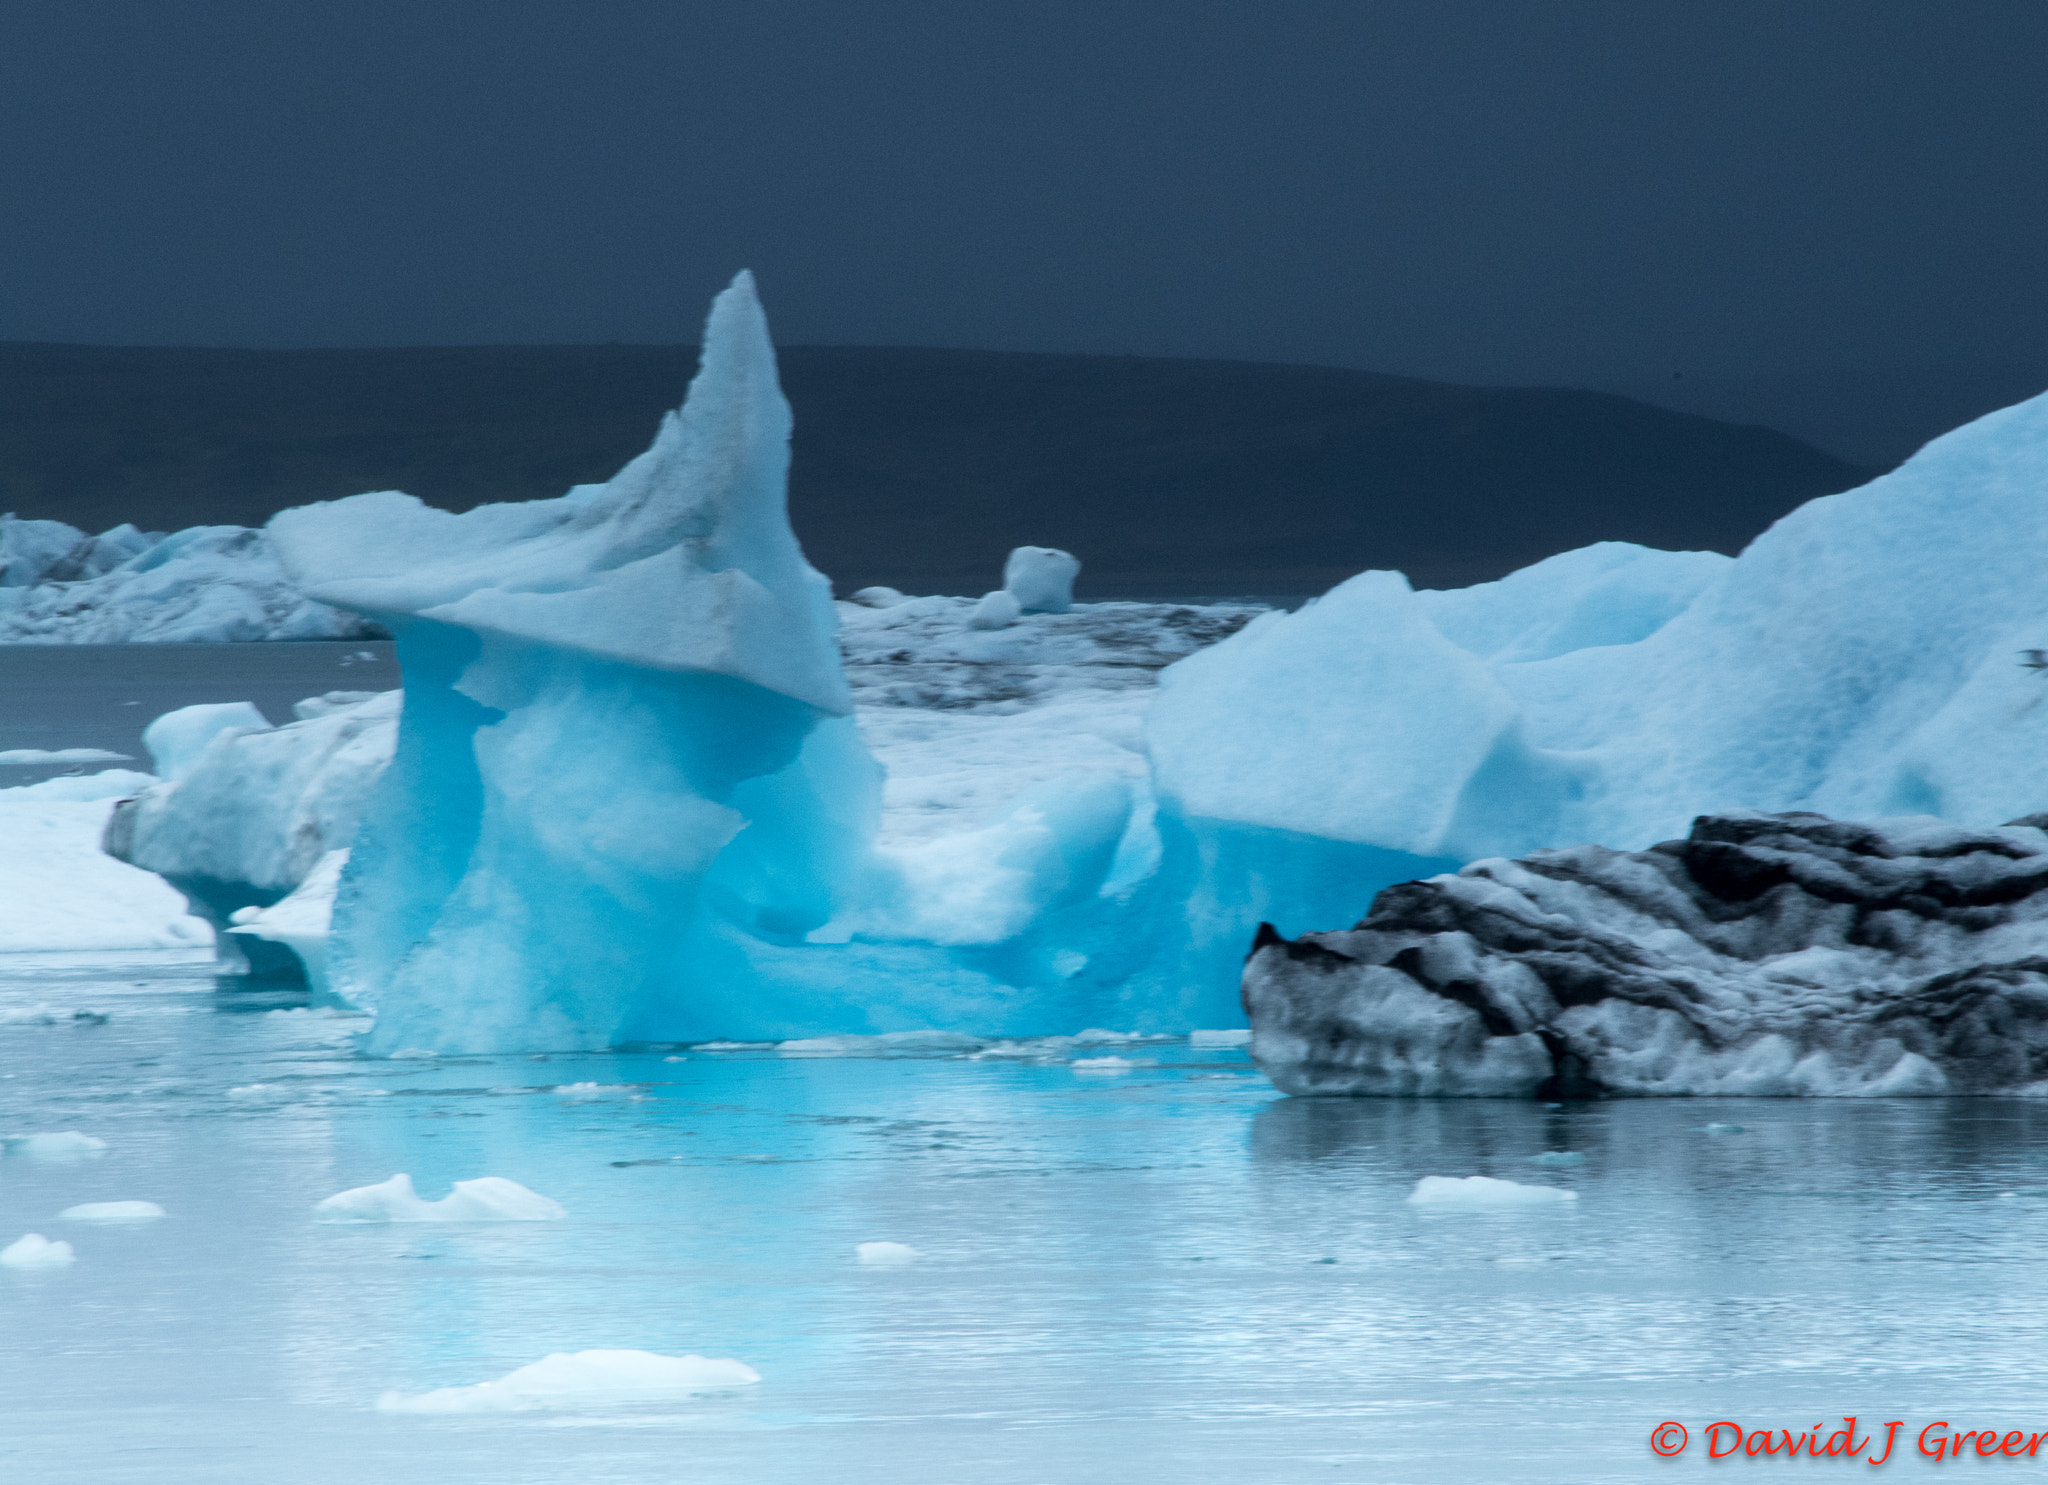 Nikon D5 + Nikon AF-S Nikkor 28-300mm F3.5-5.6G ED VR sample photo. Icelandic glacier lagoon photography